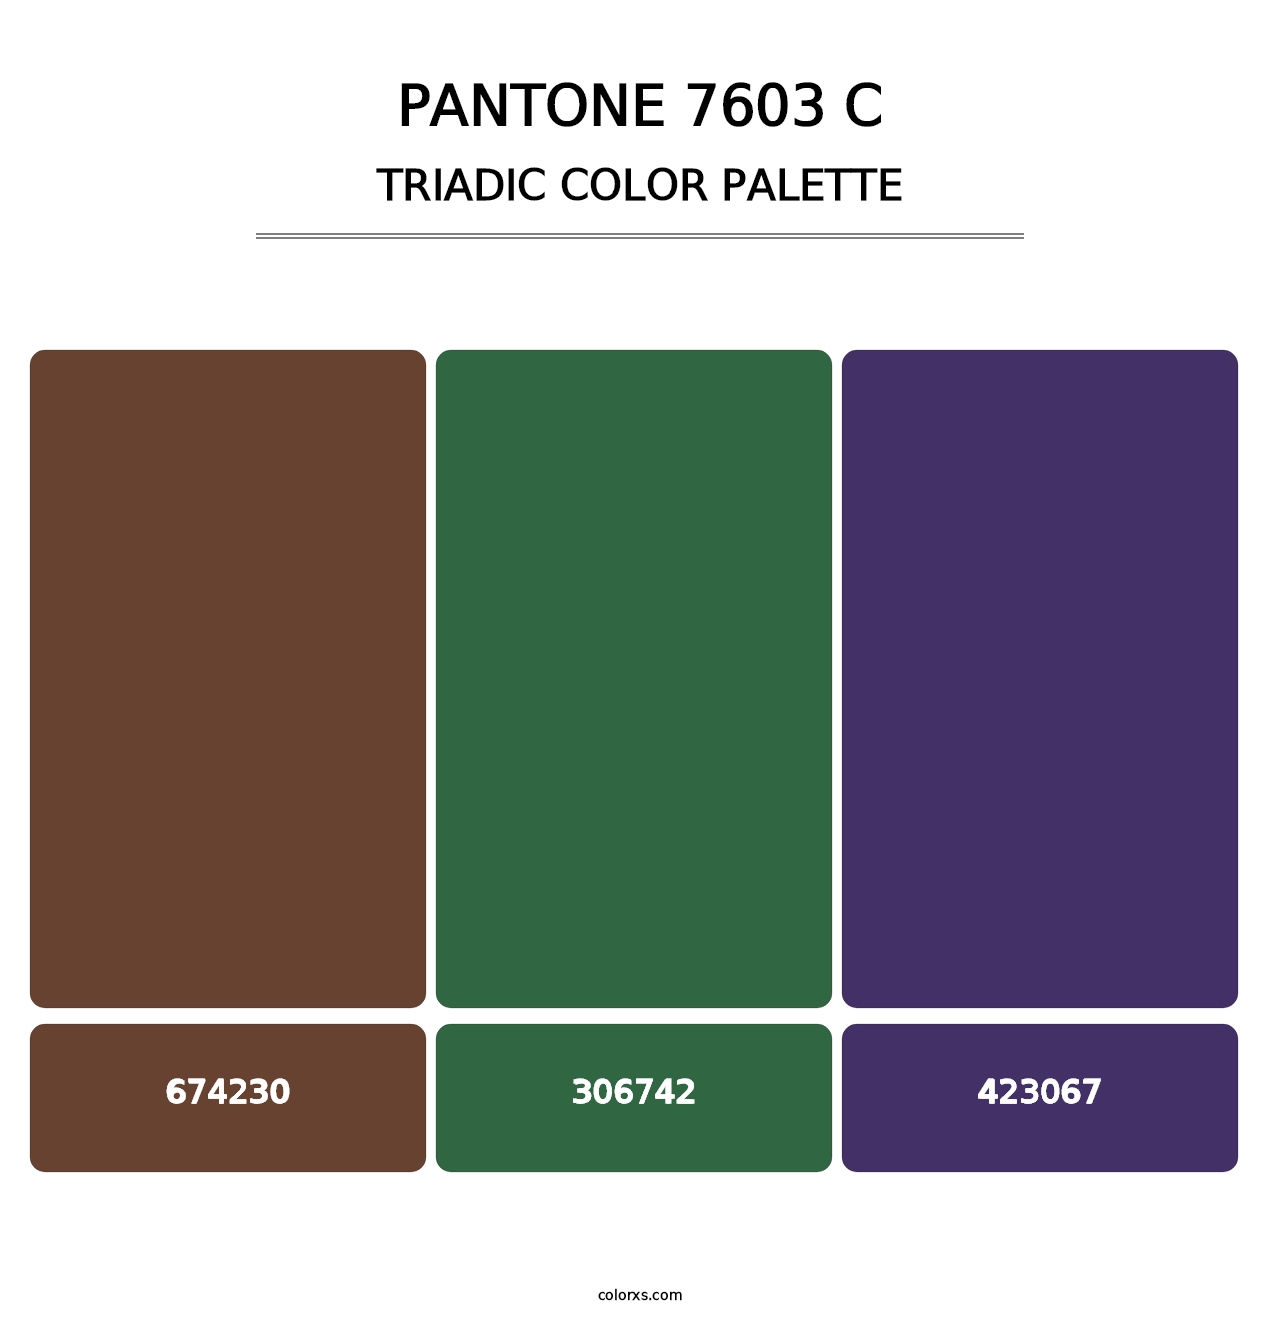 PANTONE 7603 C - Triadic Color Palette